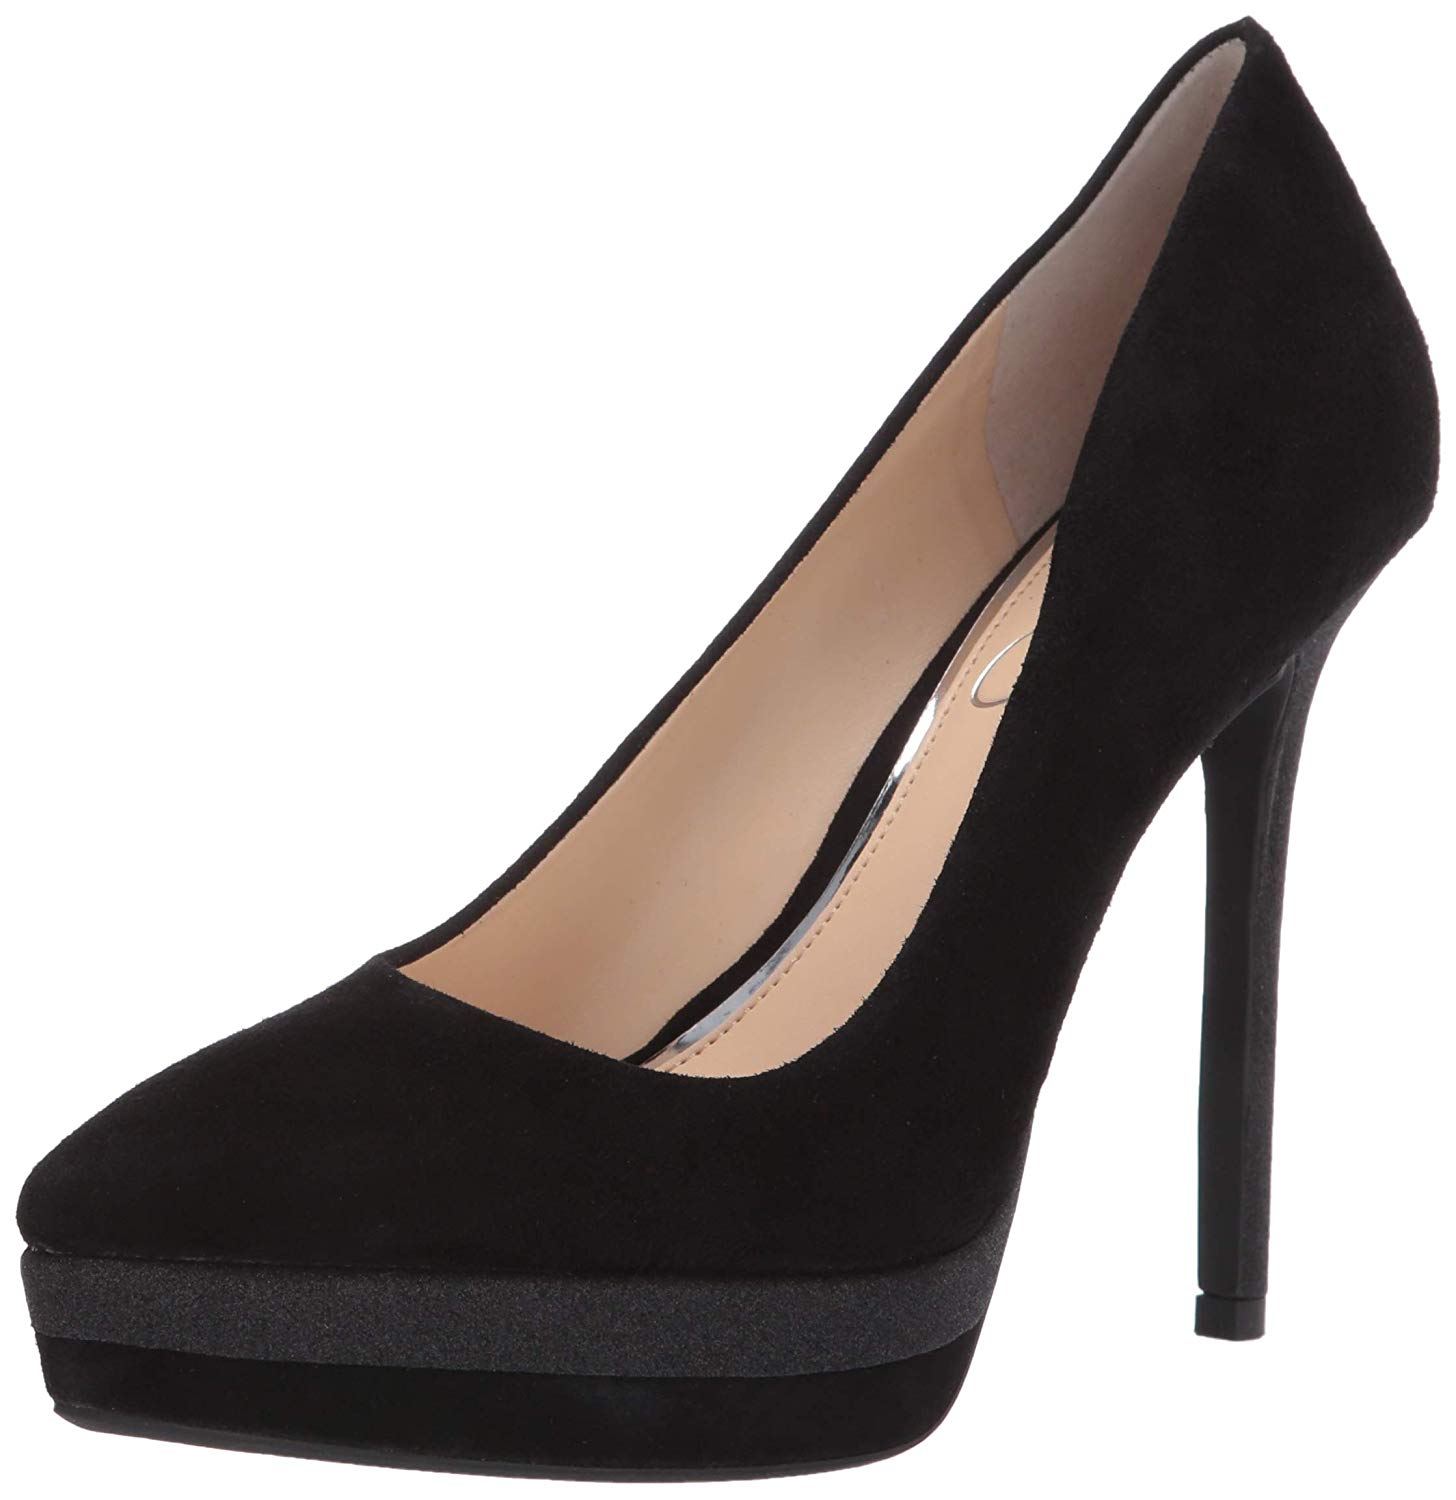 Jessica Simpson Women's Shoes Loyren Pointed Toe Classic Pumps, Black ...